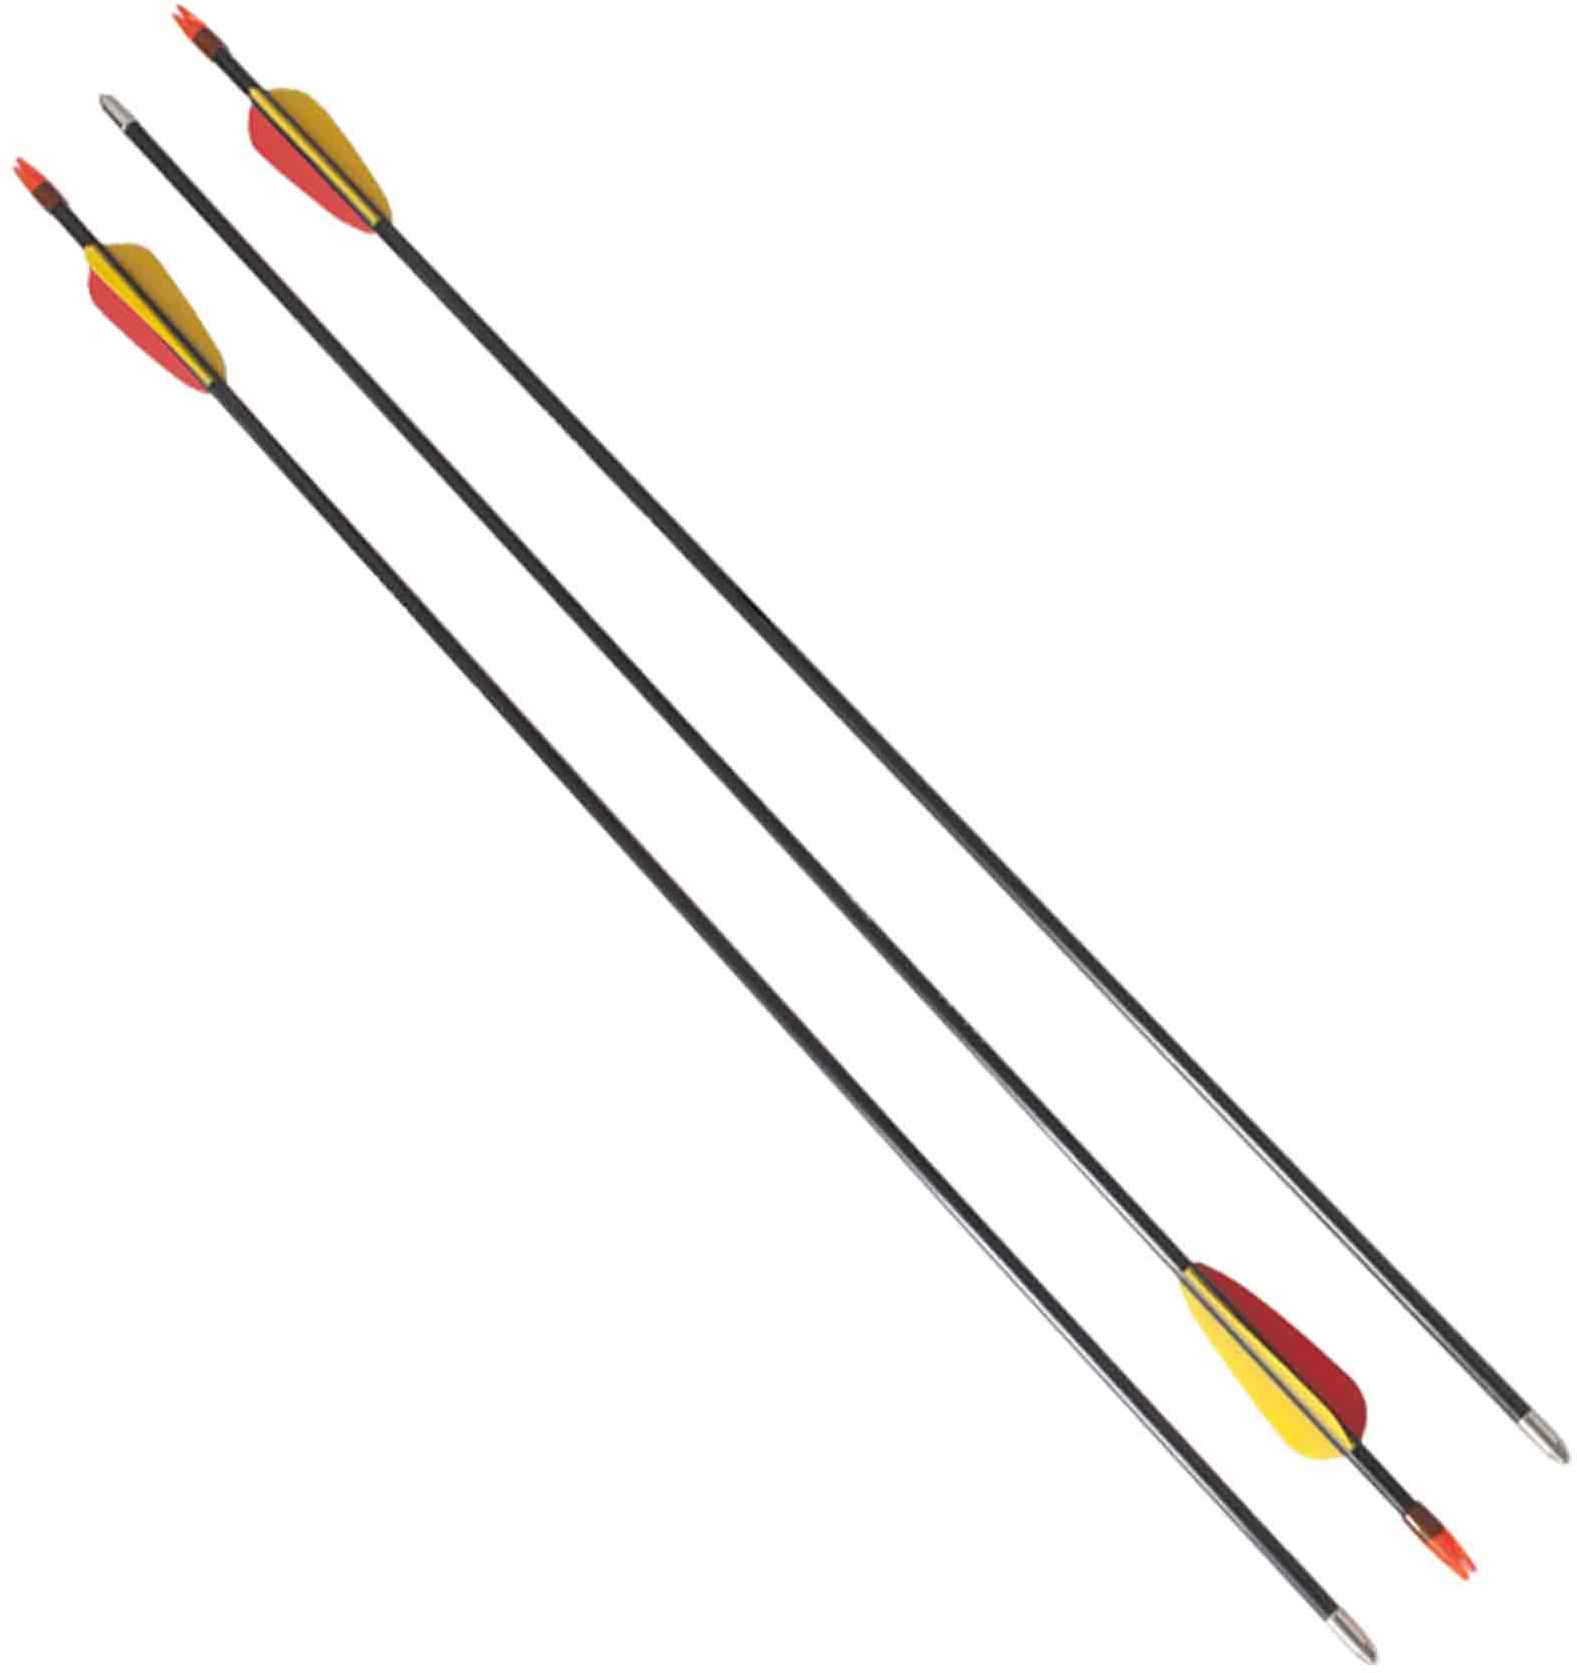 Set of arrows